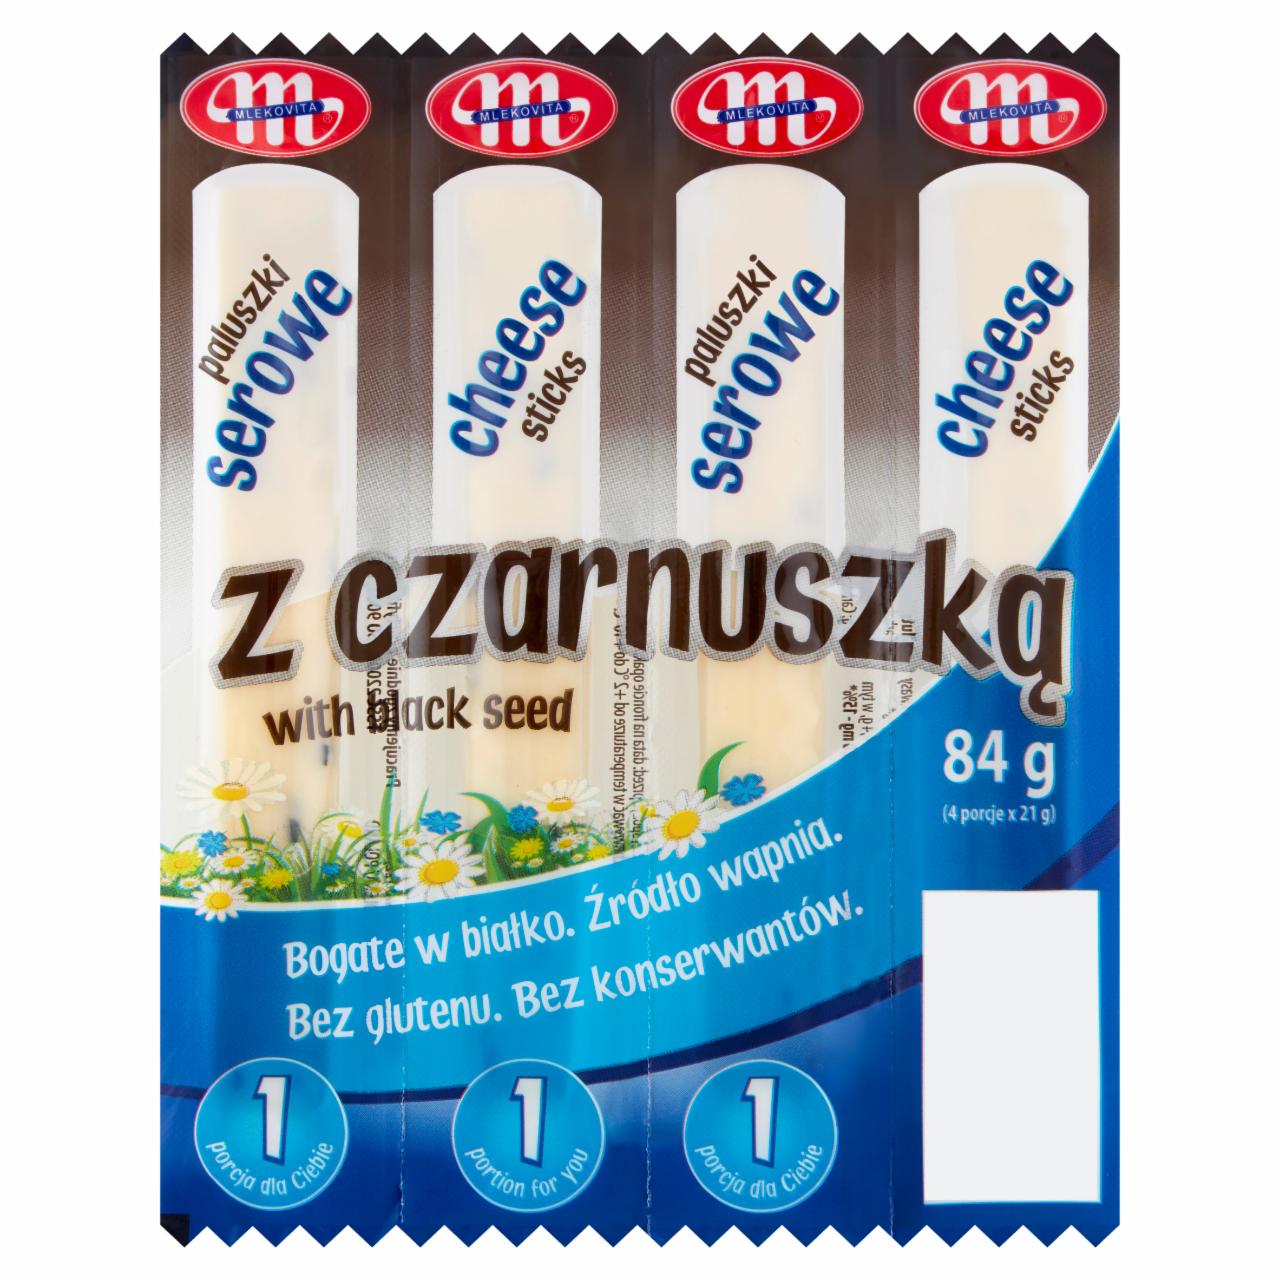 Photo - Mlekovita Cheese Sticks with Black Seed 84 g (4 x 21 g)